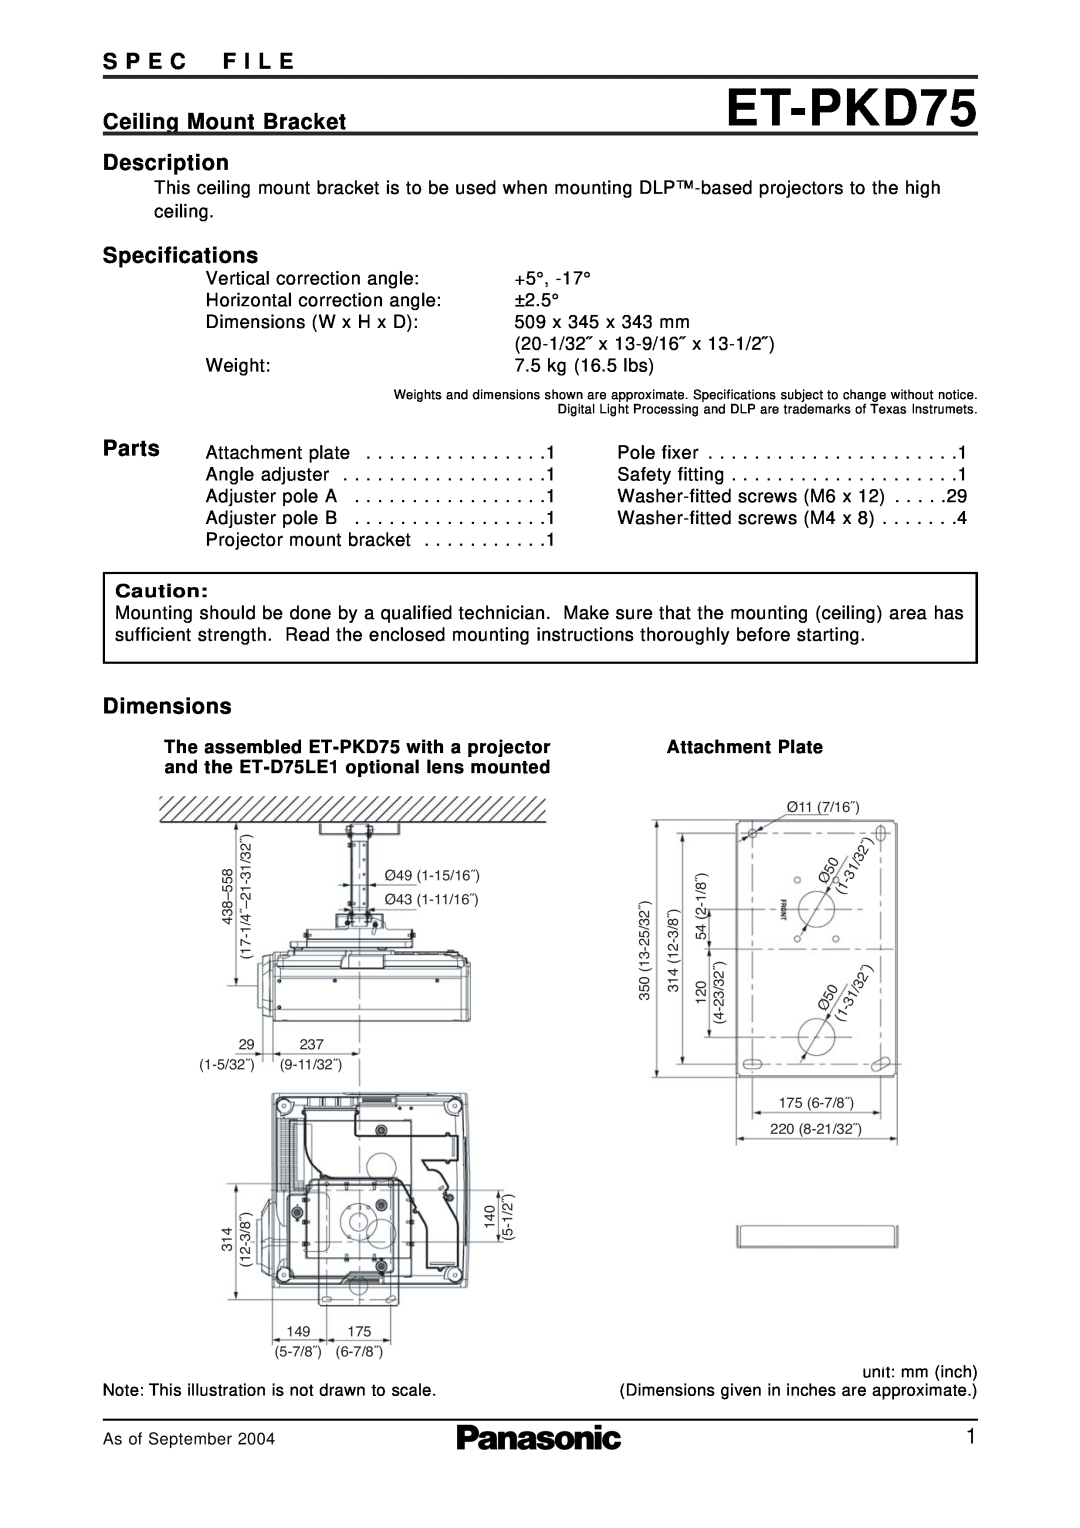 Panasonic ET-PKD75 specifications S P E C F I L E, Ceiling Mount Bracket, Description, Specifications, Parts, Dimensions 